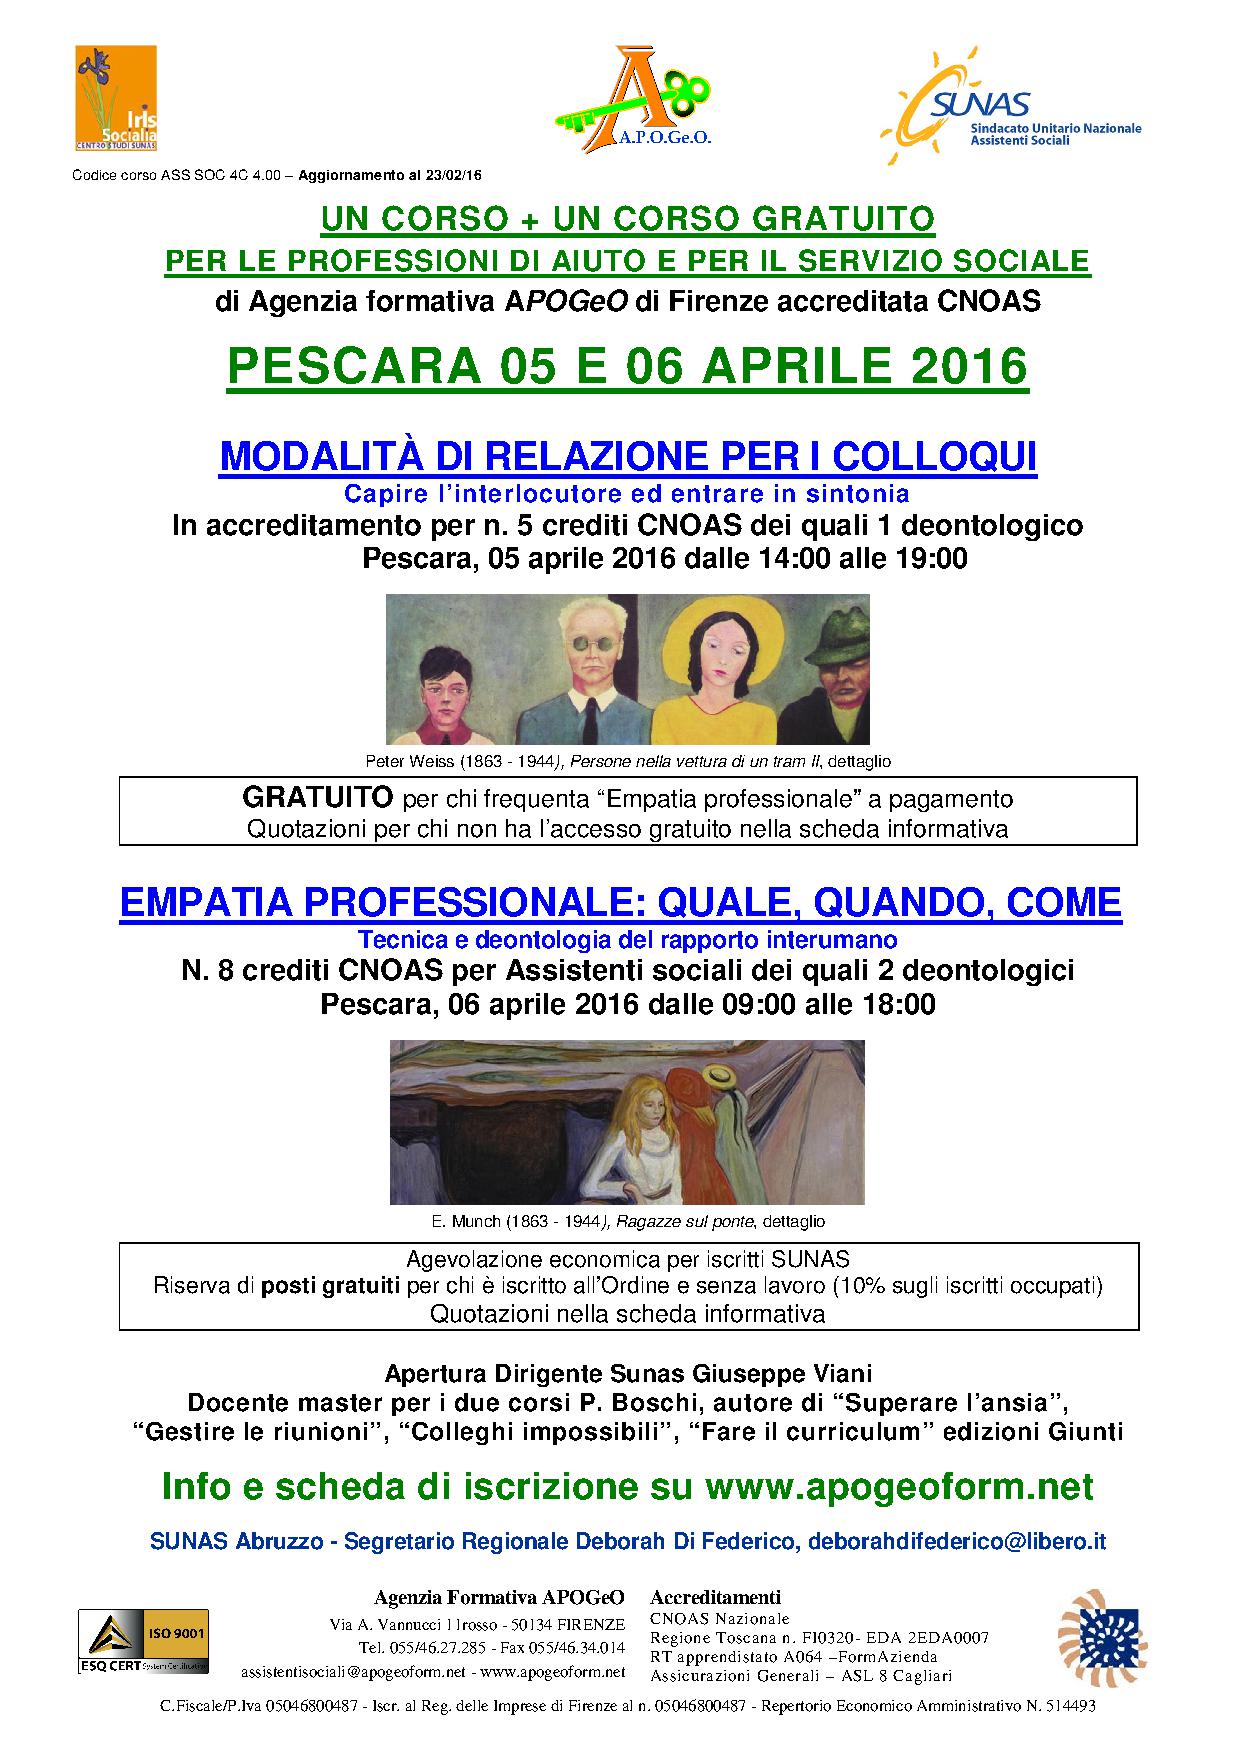 5 e 6 aprile, due giornate di formazione a Pescara